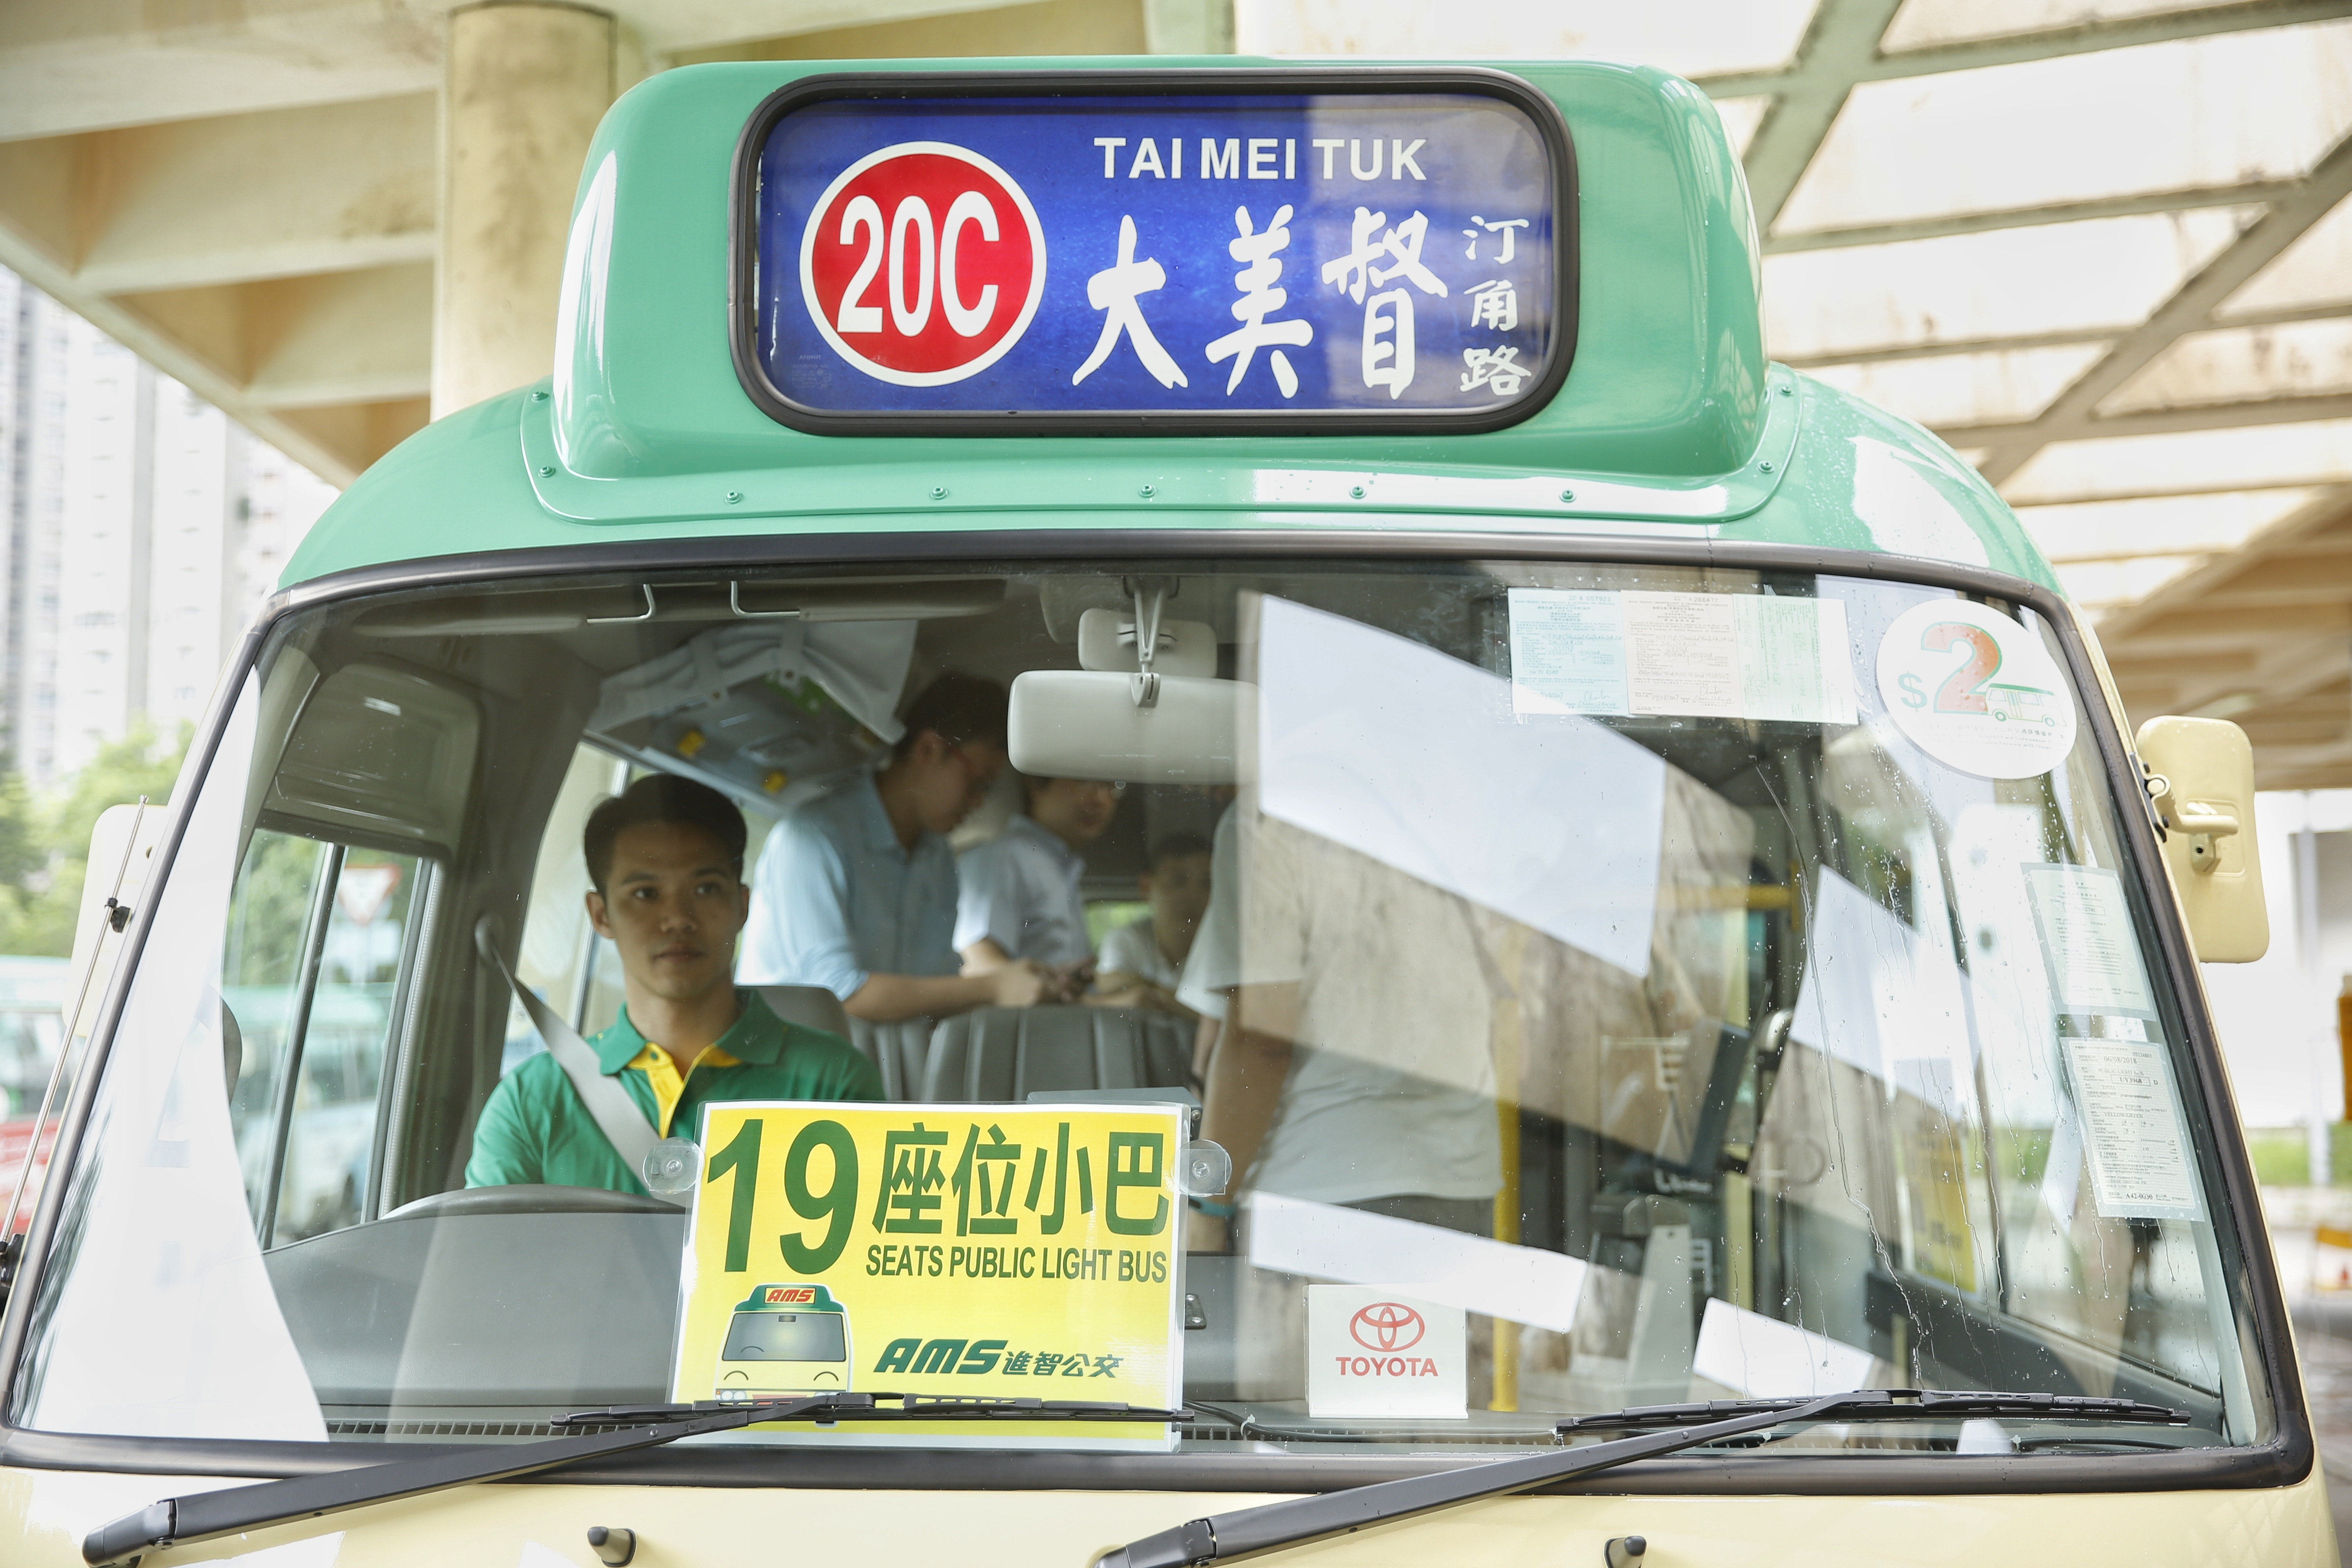 多圖 19座小巴今載客行駛大尾篤c線乘客 加班次最實際 香港01 社會新聞